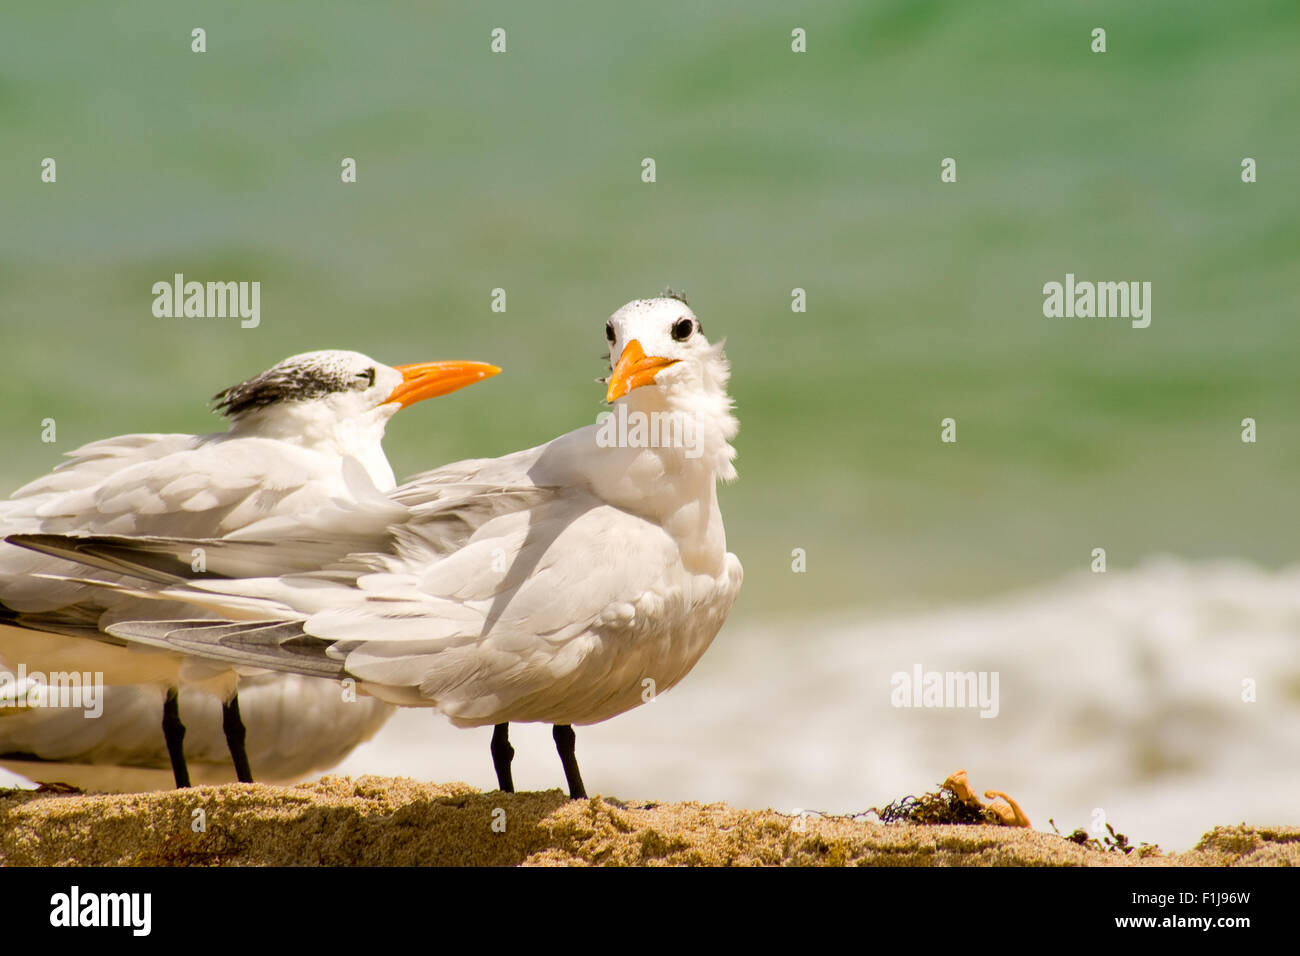 Seagulls on the beach, Miami, Miami-Dade County, Florida, USA Stock Photo